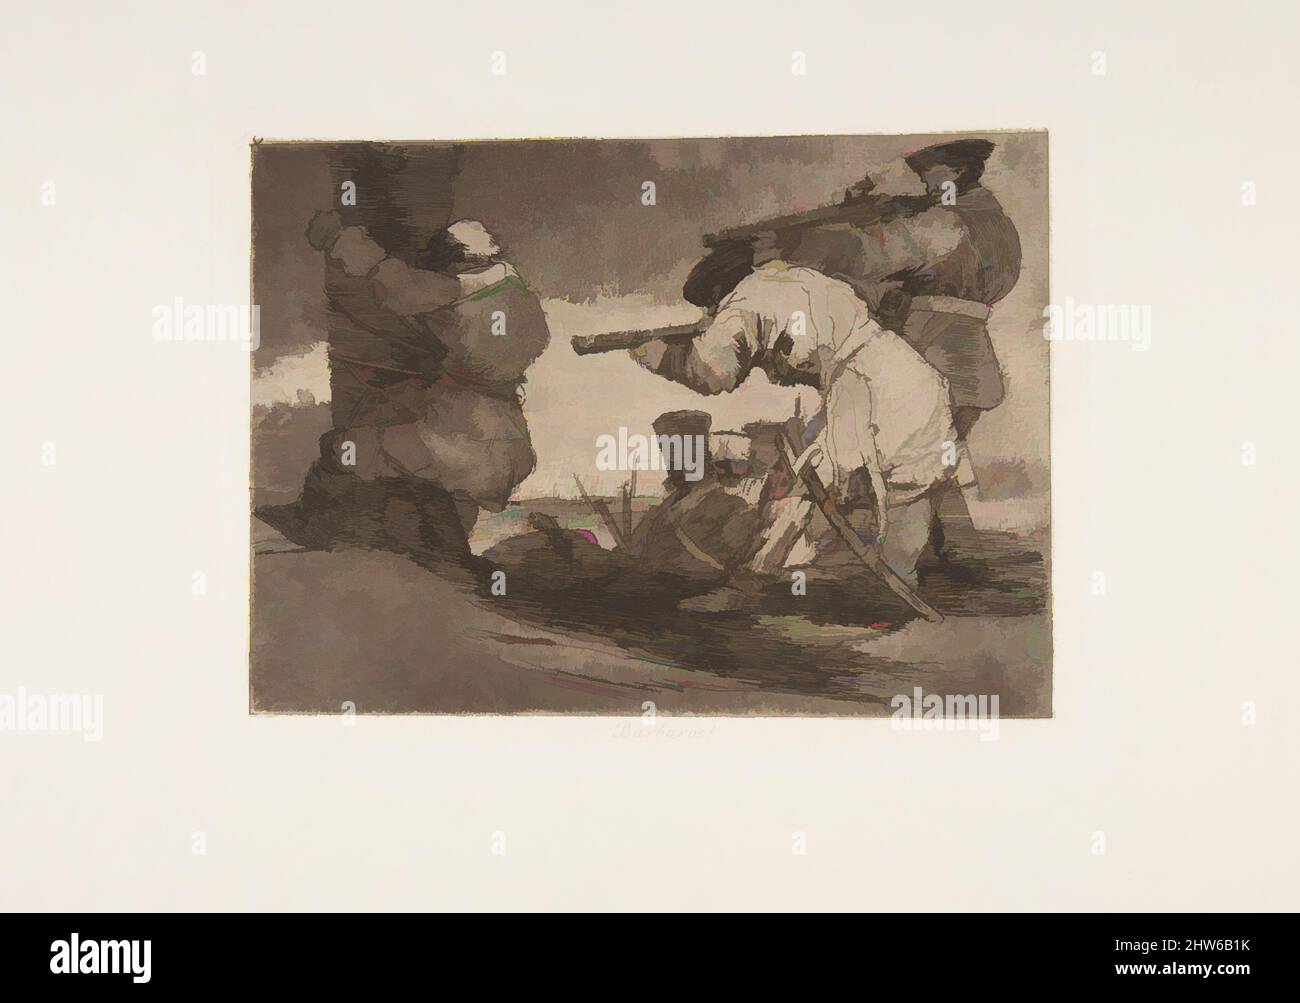 Art inspiré par la planche 38 de 'les désastres de la guerre' (Los Desastres de la Guerra):'Barbarians!' (Bárbaros!), 1810 (publié en 1863), Etching, burnished aquatint, burin and Burnisher, plaque: 6 1/8 × 8 1/16 po. (15,5 × 20,5 cm), Prints, Goya (Francisco de Goya y Lucientes) (espagnol, oeuvres classiques modernisées par Artotop avec une touche de modernité. Formes, couleur et valeur, impact visuel accrocheur sur l'art émotions par la liberté d'œuvres d'art d'une manière contemporaine. Un message intemporel qui cherche une nouvelle direction créative. Artistes qui se tournent vers le support numérique et créent le NFT Artotop Banque D'Images